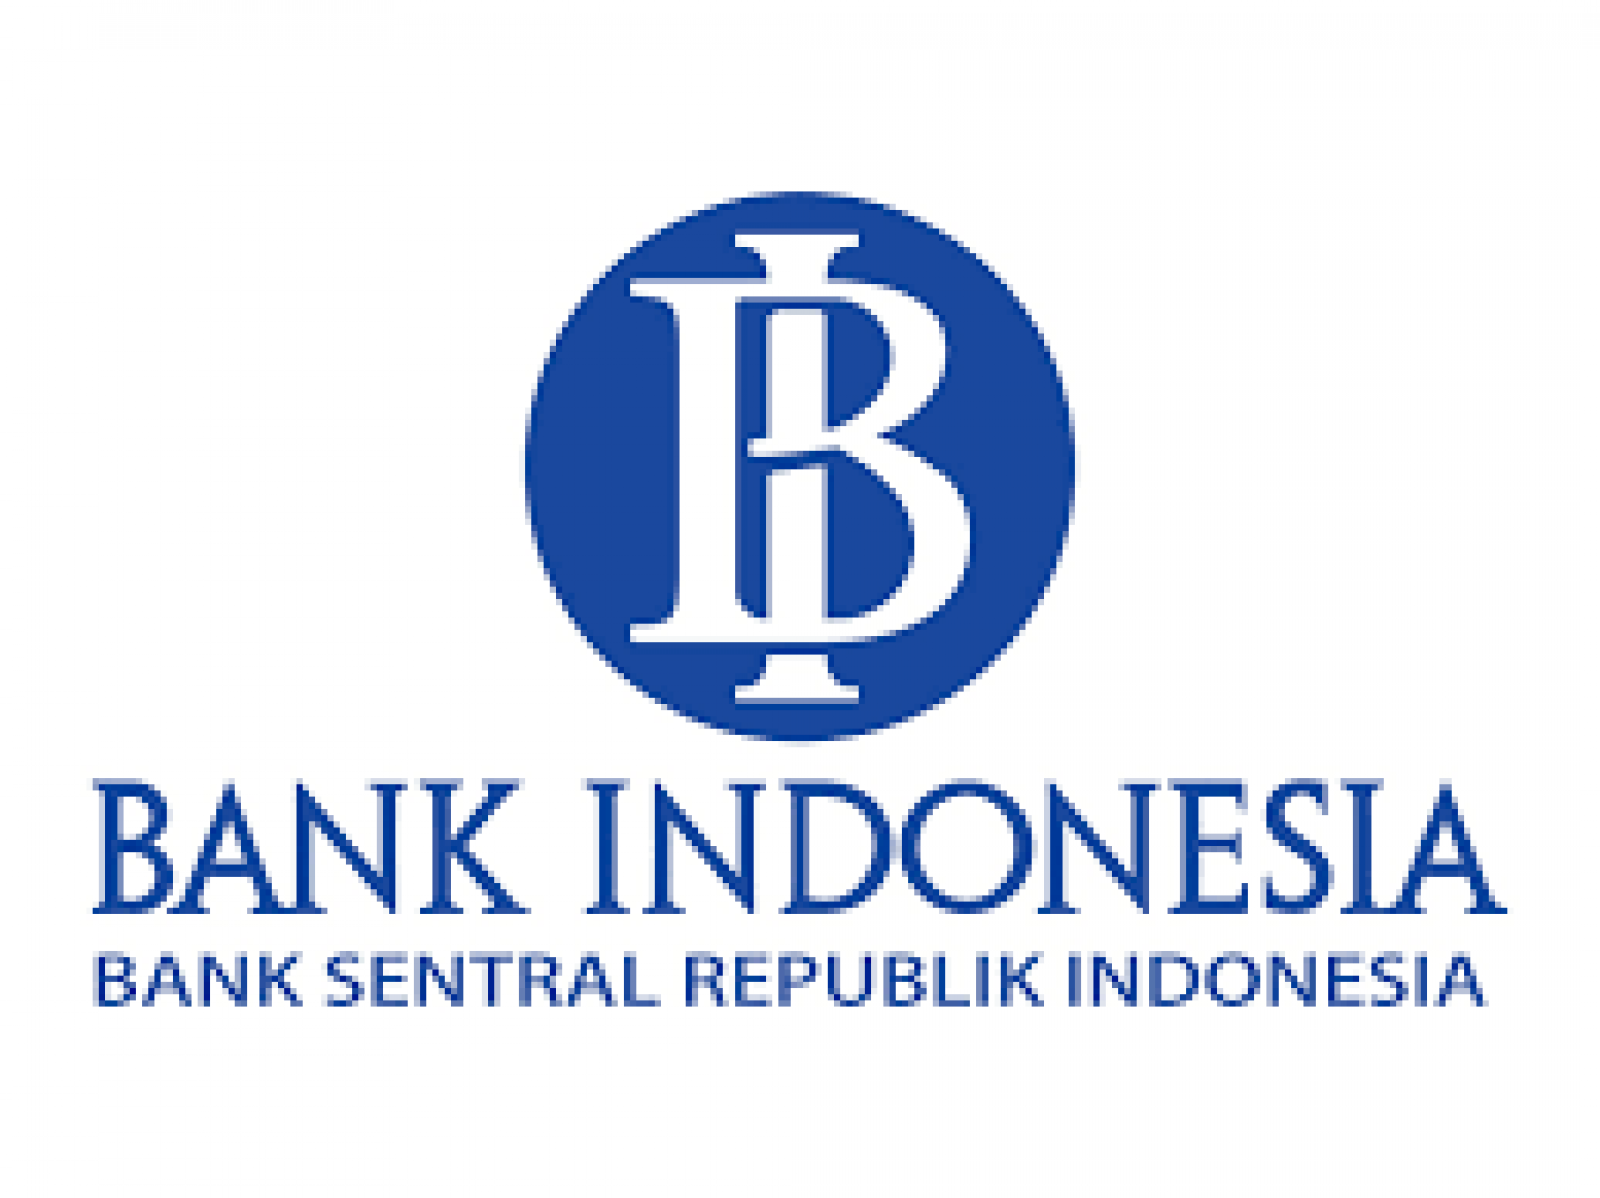 Bagaimana proses pembayaran bi-rtgs yang dilakukan oleh bank indonesia